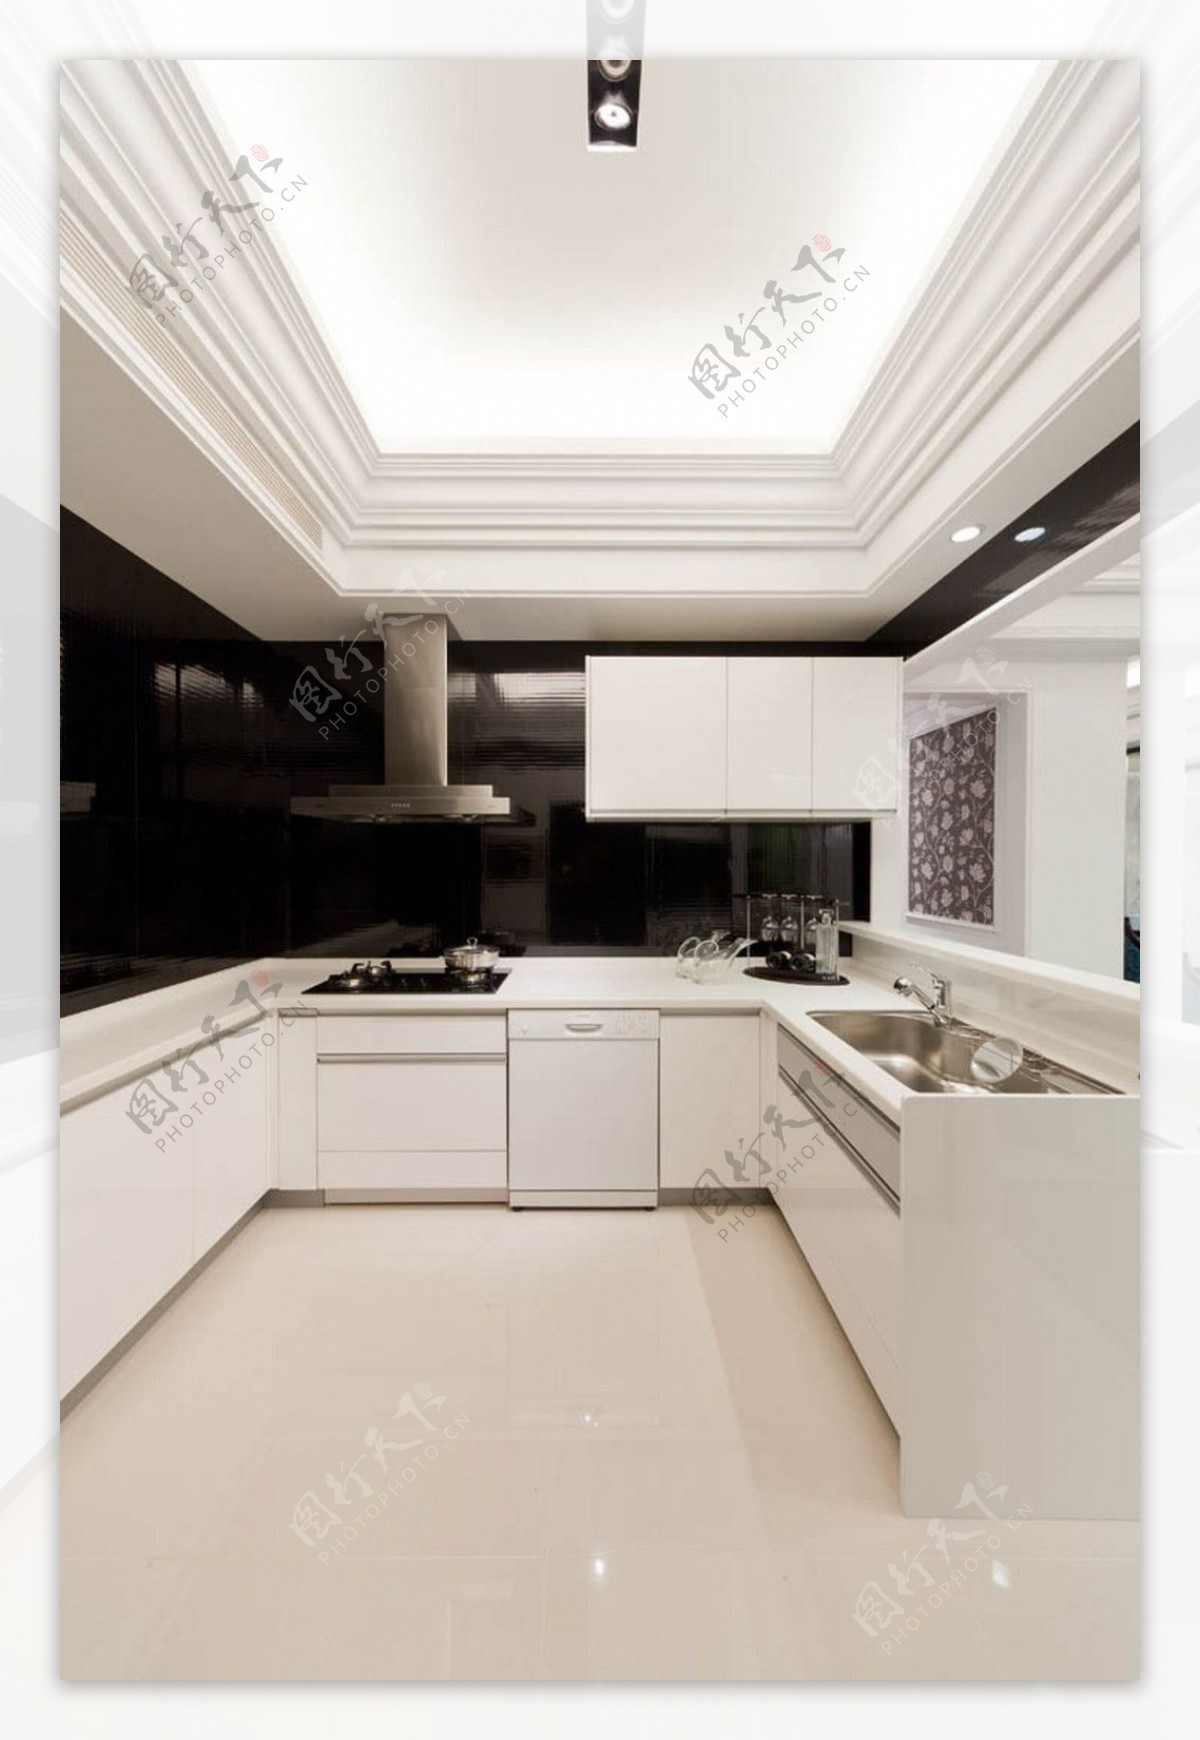 现代简约风室内设计餐厅白色整体橱柜效果图JPG